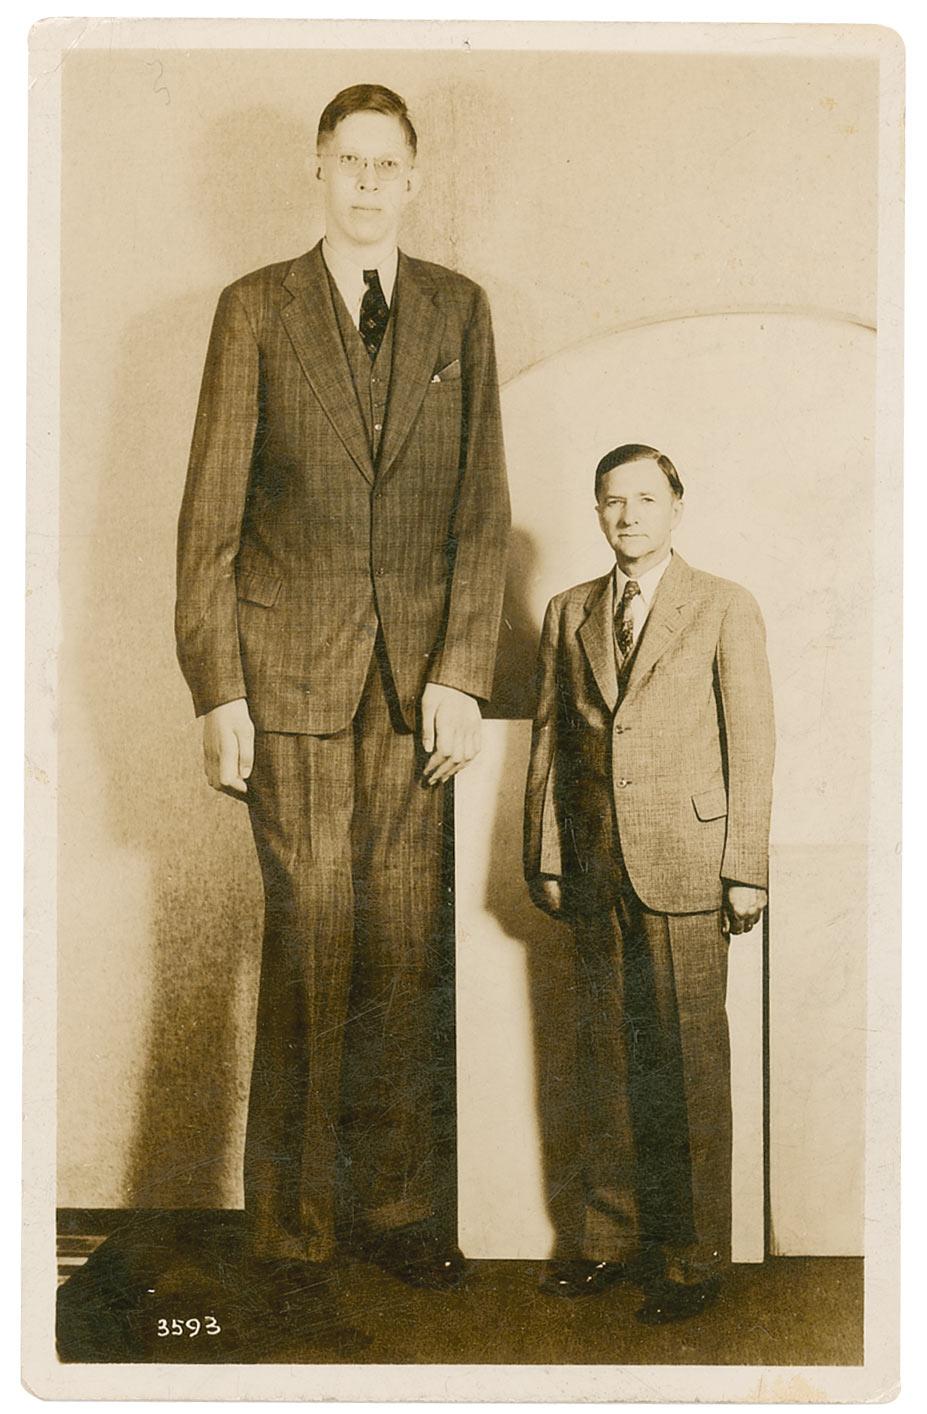 Robert Wadlow é o homem mais alto do mundo de todos os tempos. Ele atingiu a altura de 2,72 m graças a uma produção anormal de hormônios que o faziam crescer. Ele morreu em 1940 com apenas 22 anos.